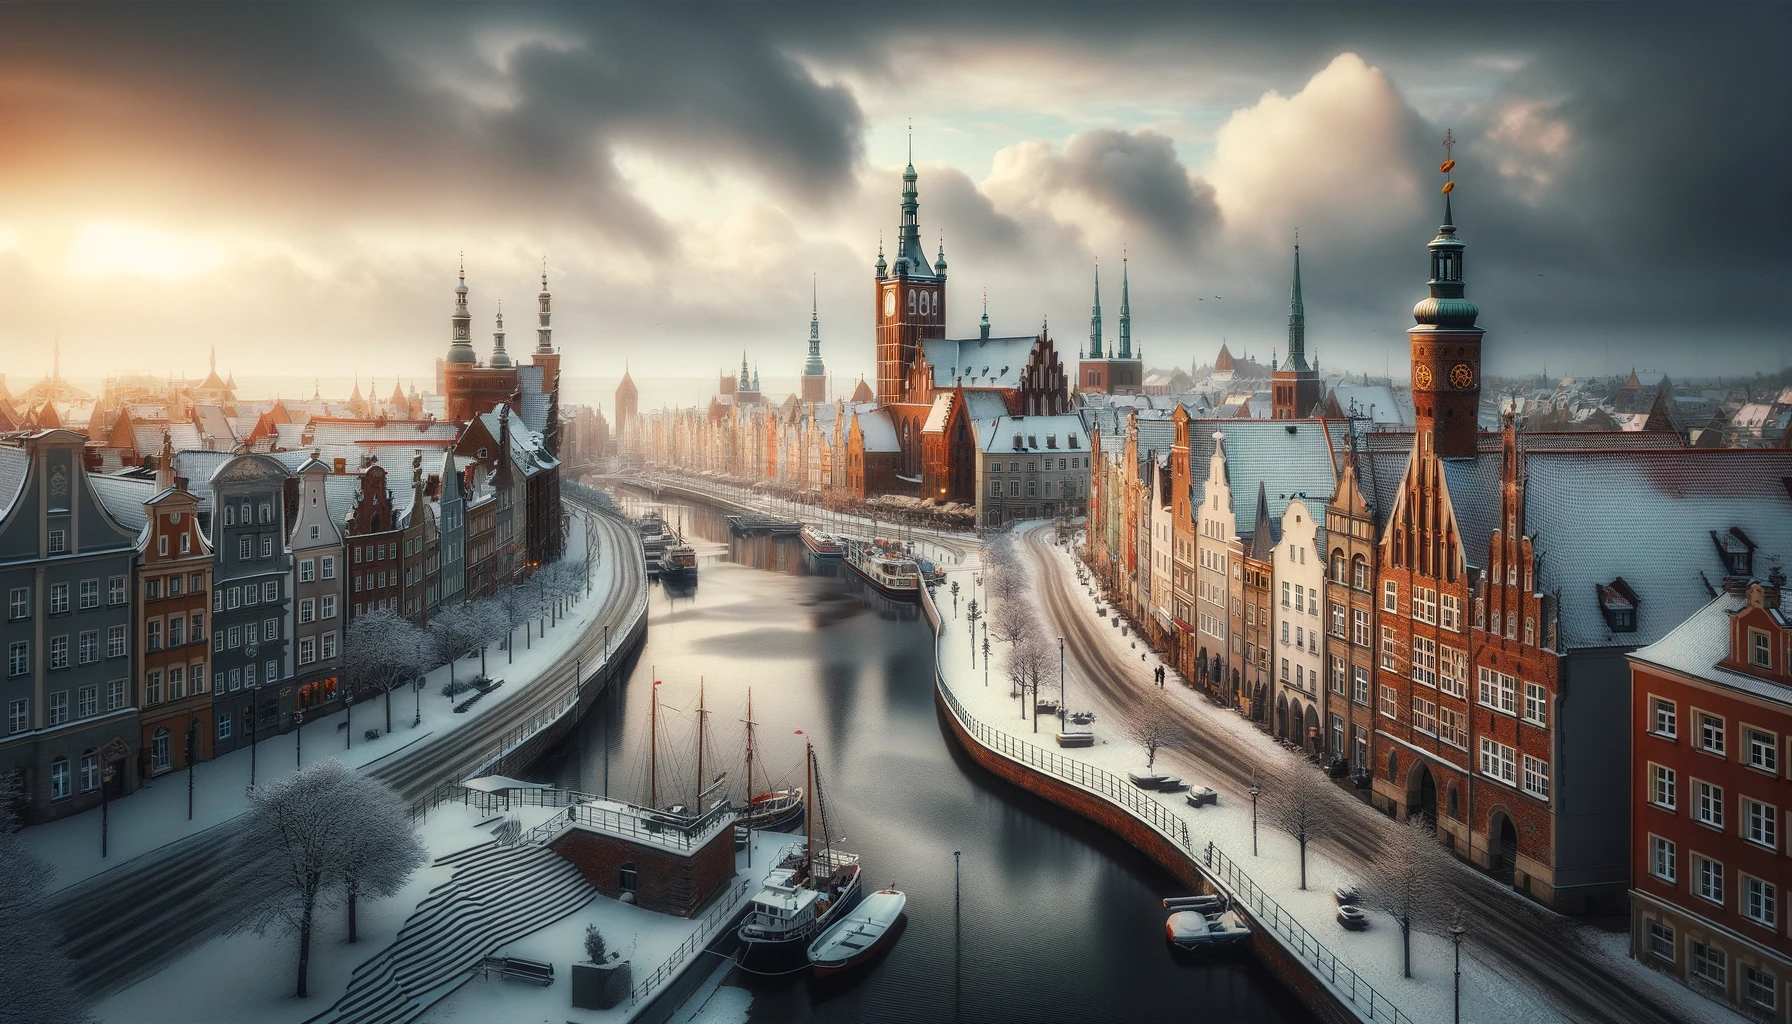 Zimowy widok na zabytkowe centrum Gdańska, z pokrytymi śniegiem uliczkami i historycznymi budynkami